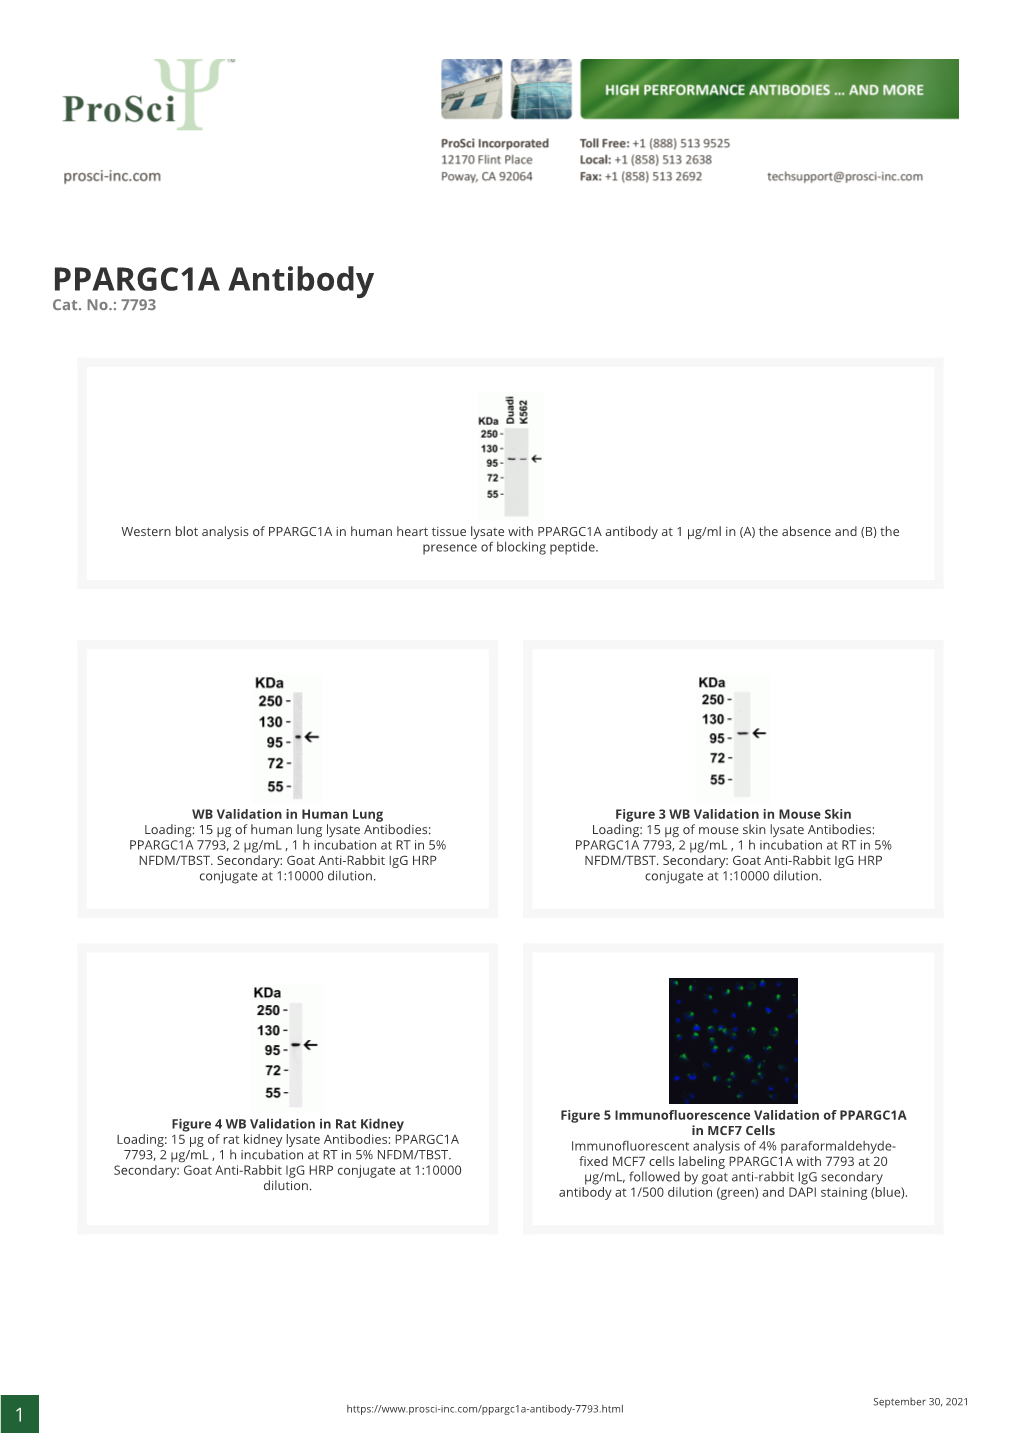 PPARGC1A Antibody Cat